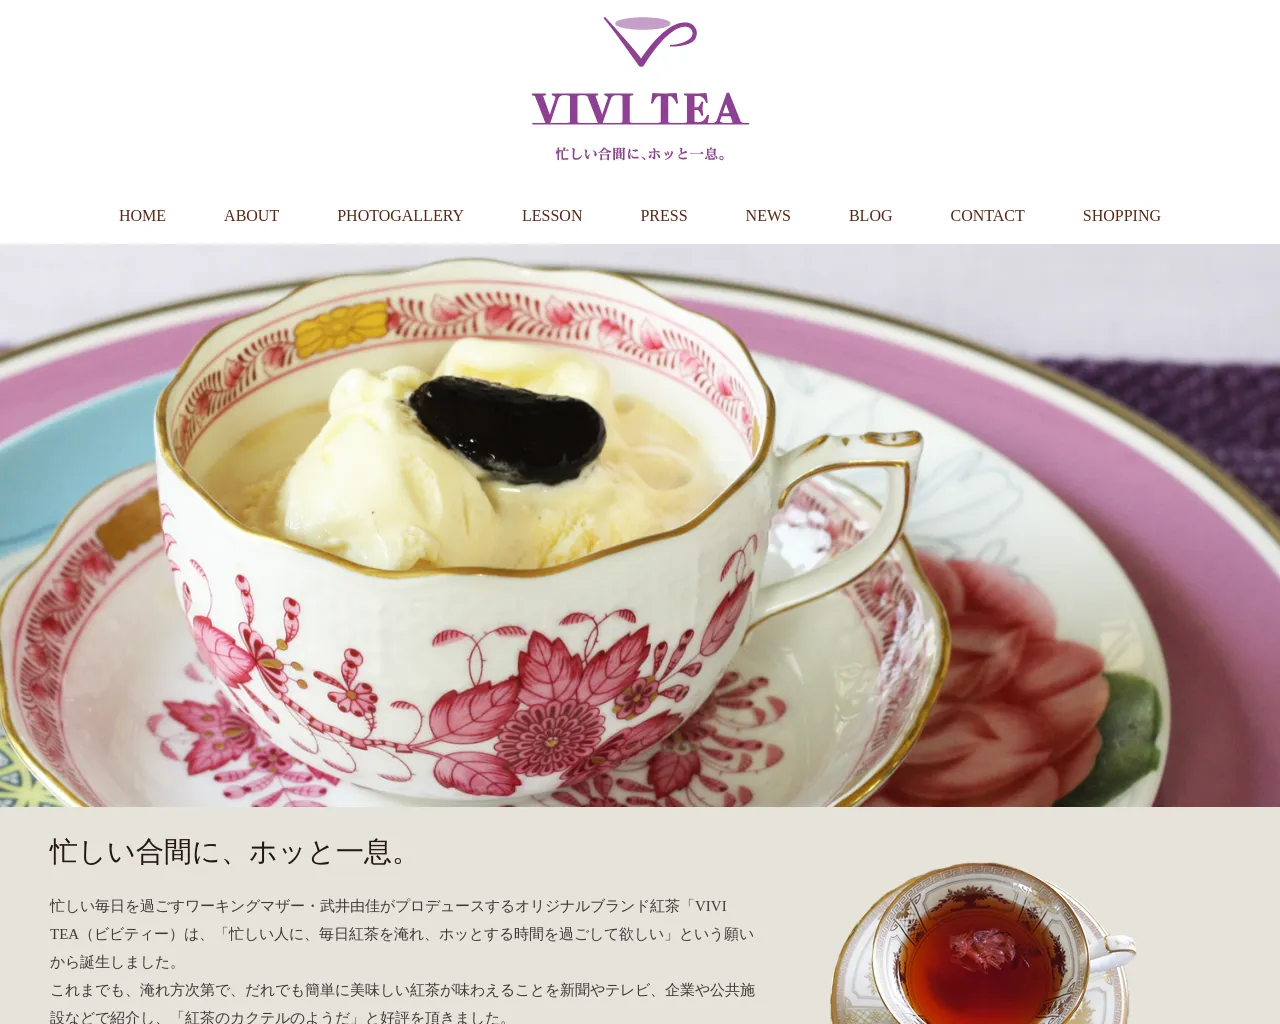 VIVITEA site